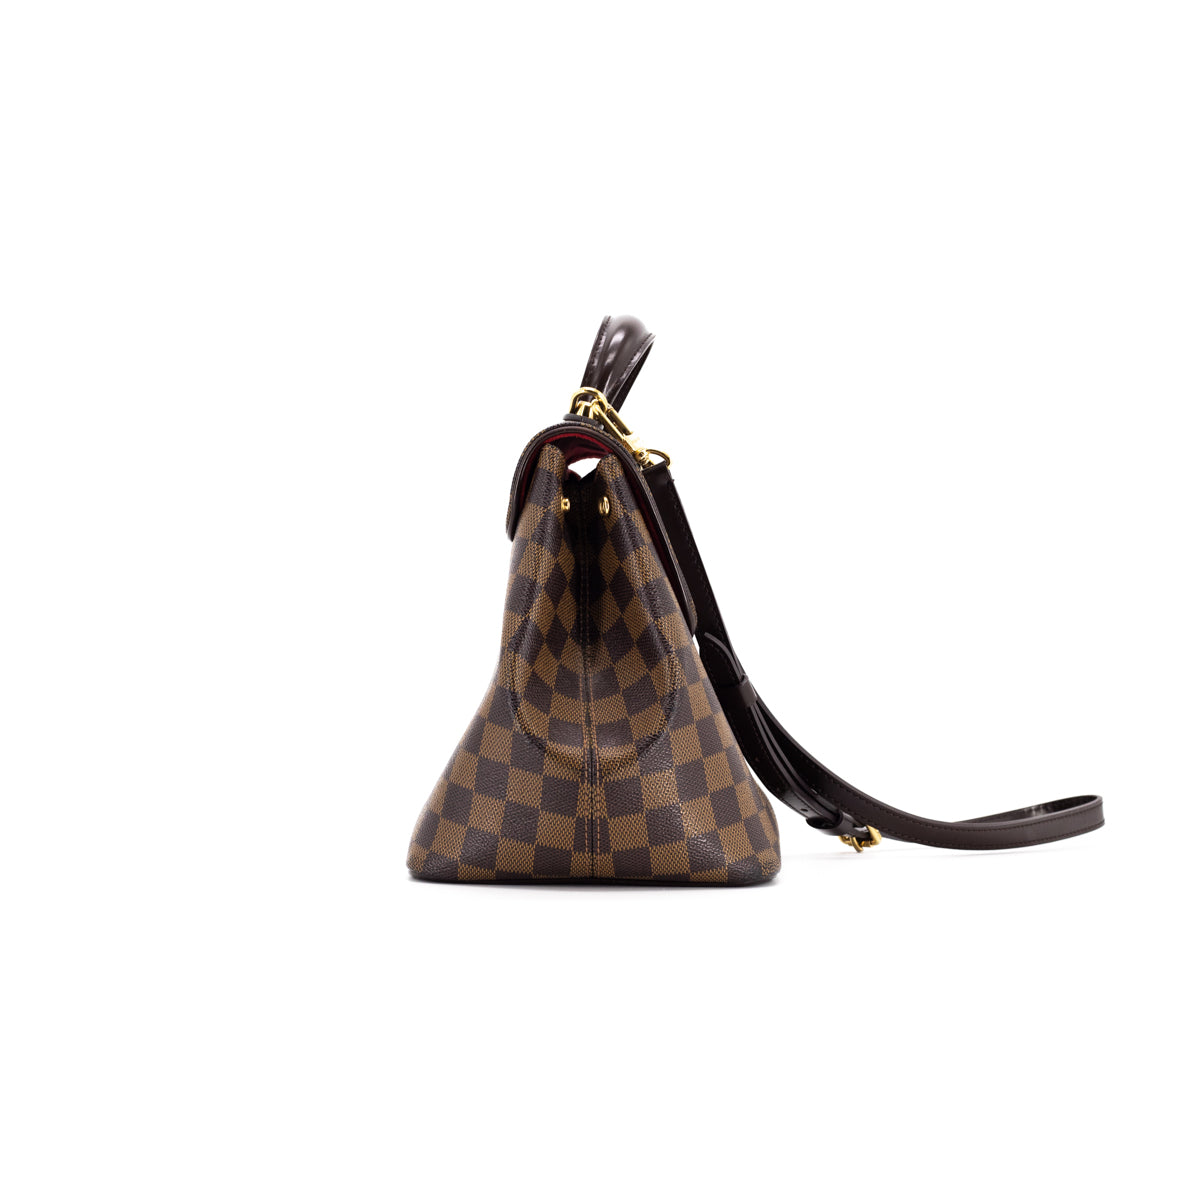 Louis Vuitton Bergamo PM Shoulder Bag